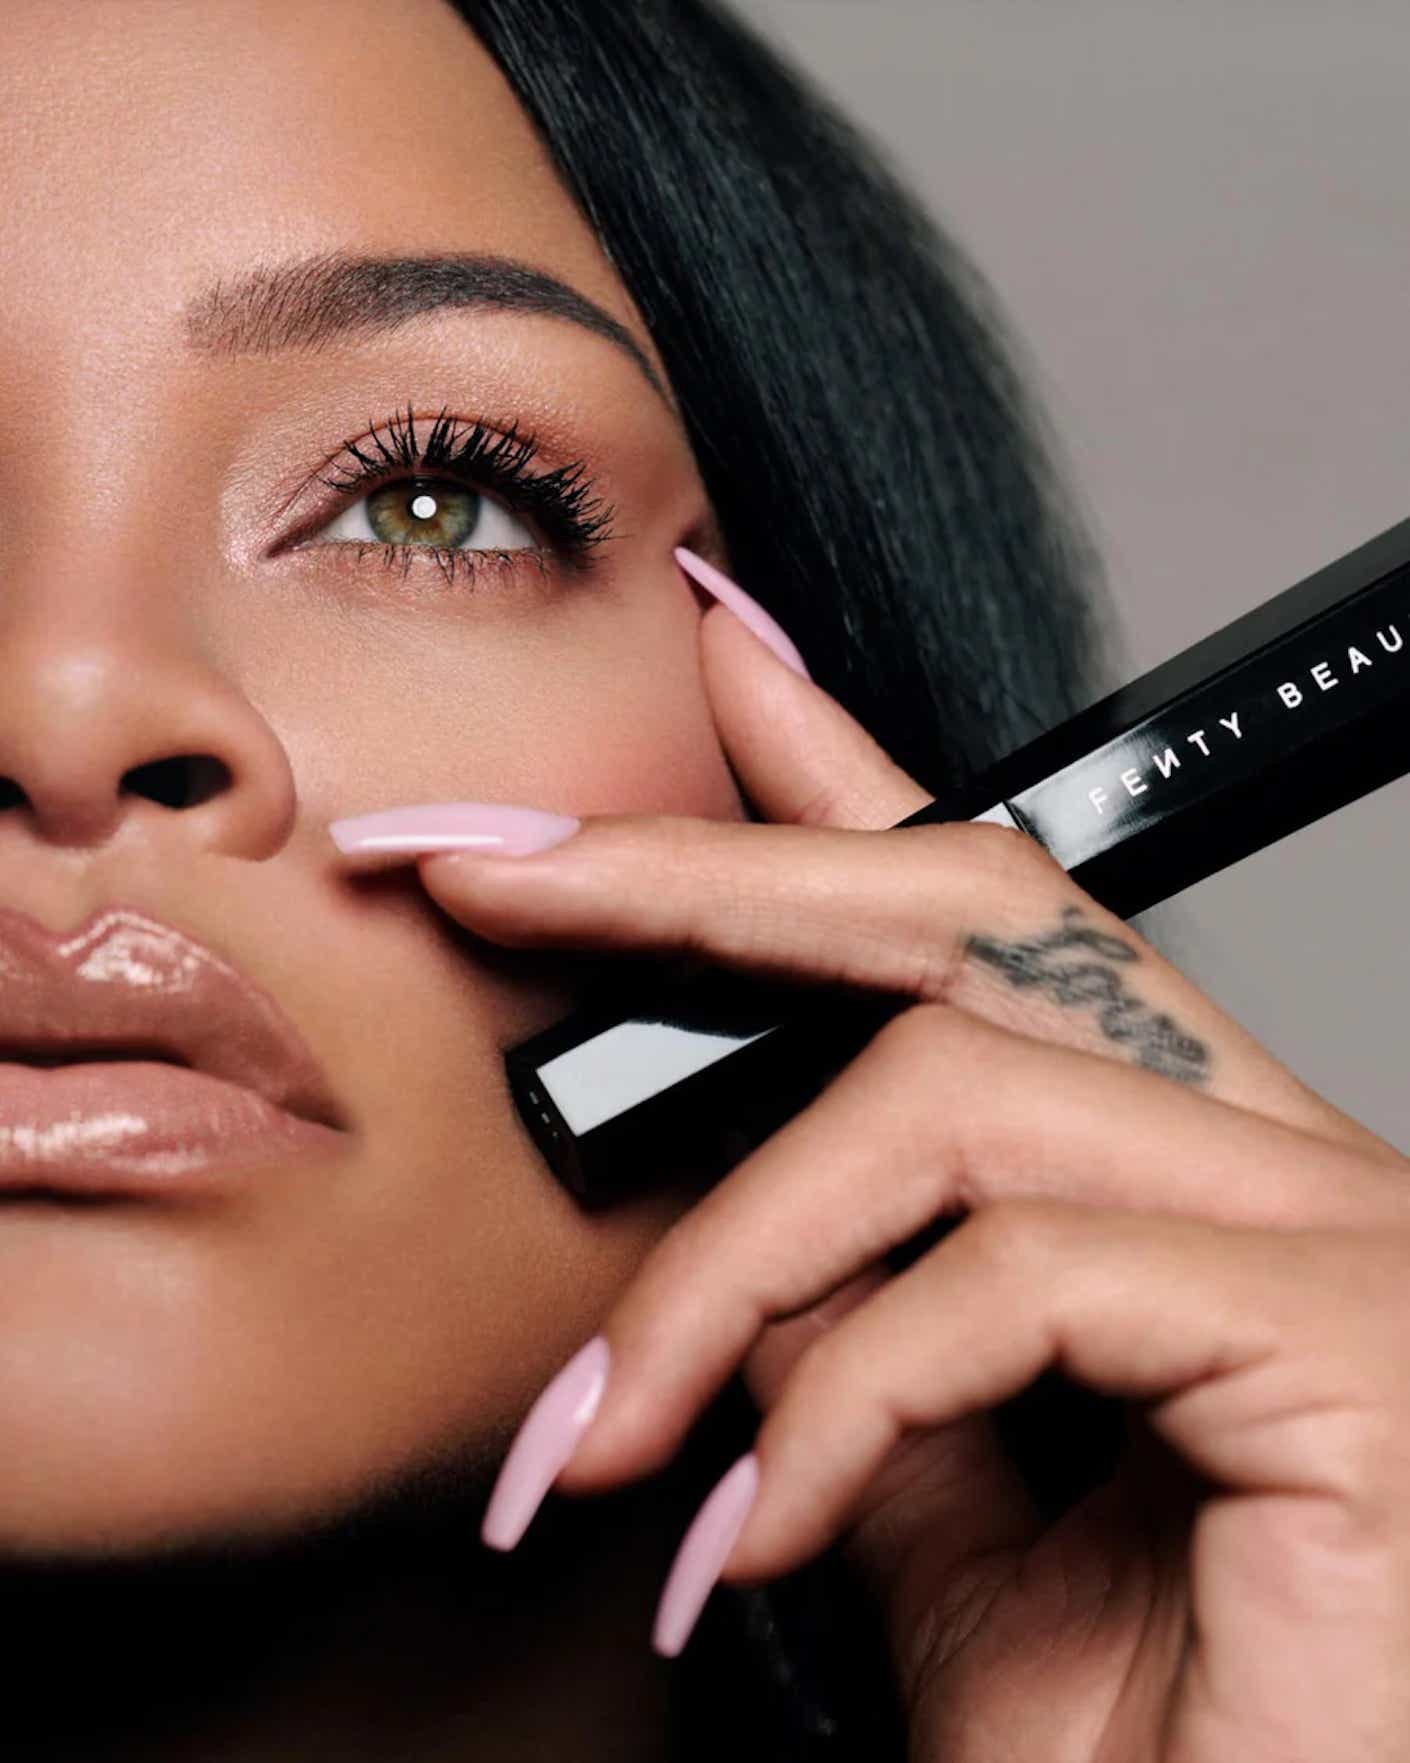 Rihanna poses with mascara